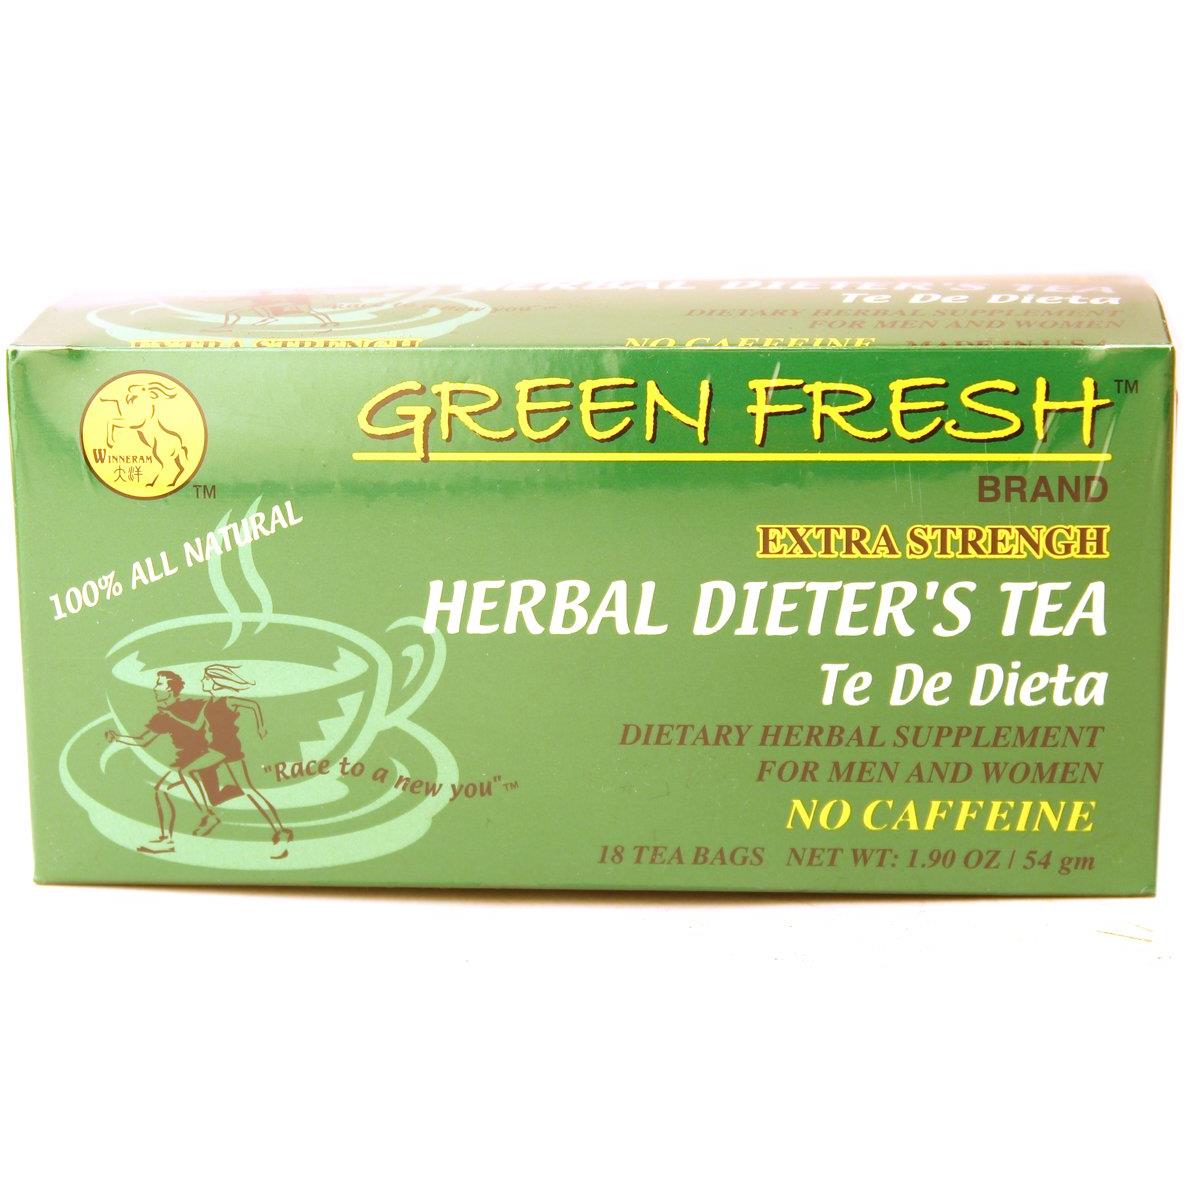 Green Fresh Extra Strength Herbal Dieters Tea, 18 Tea Bags